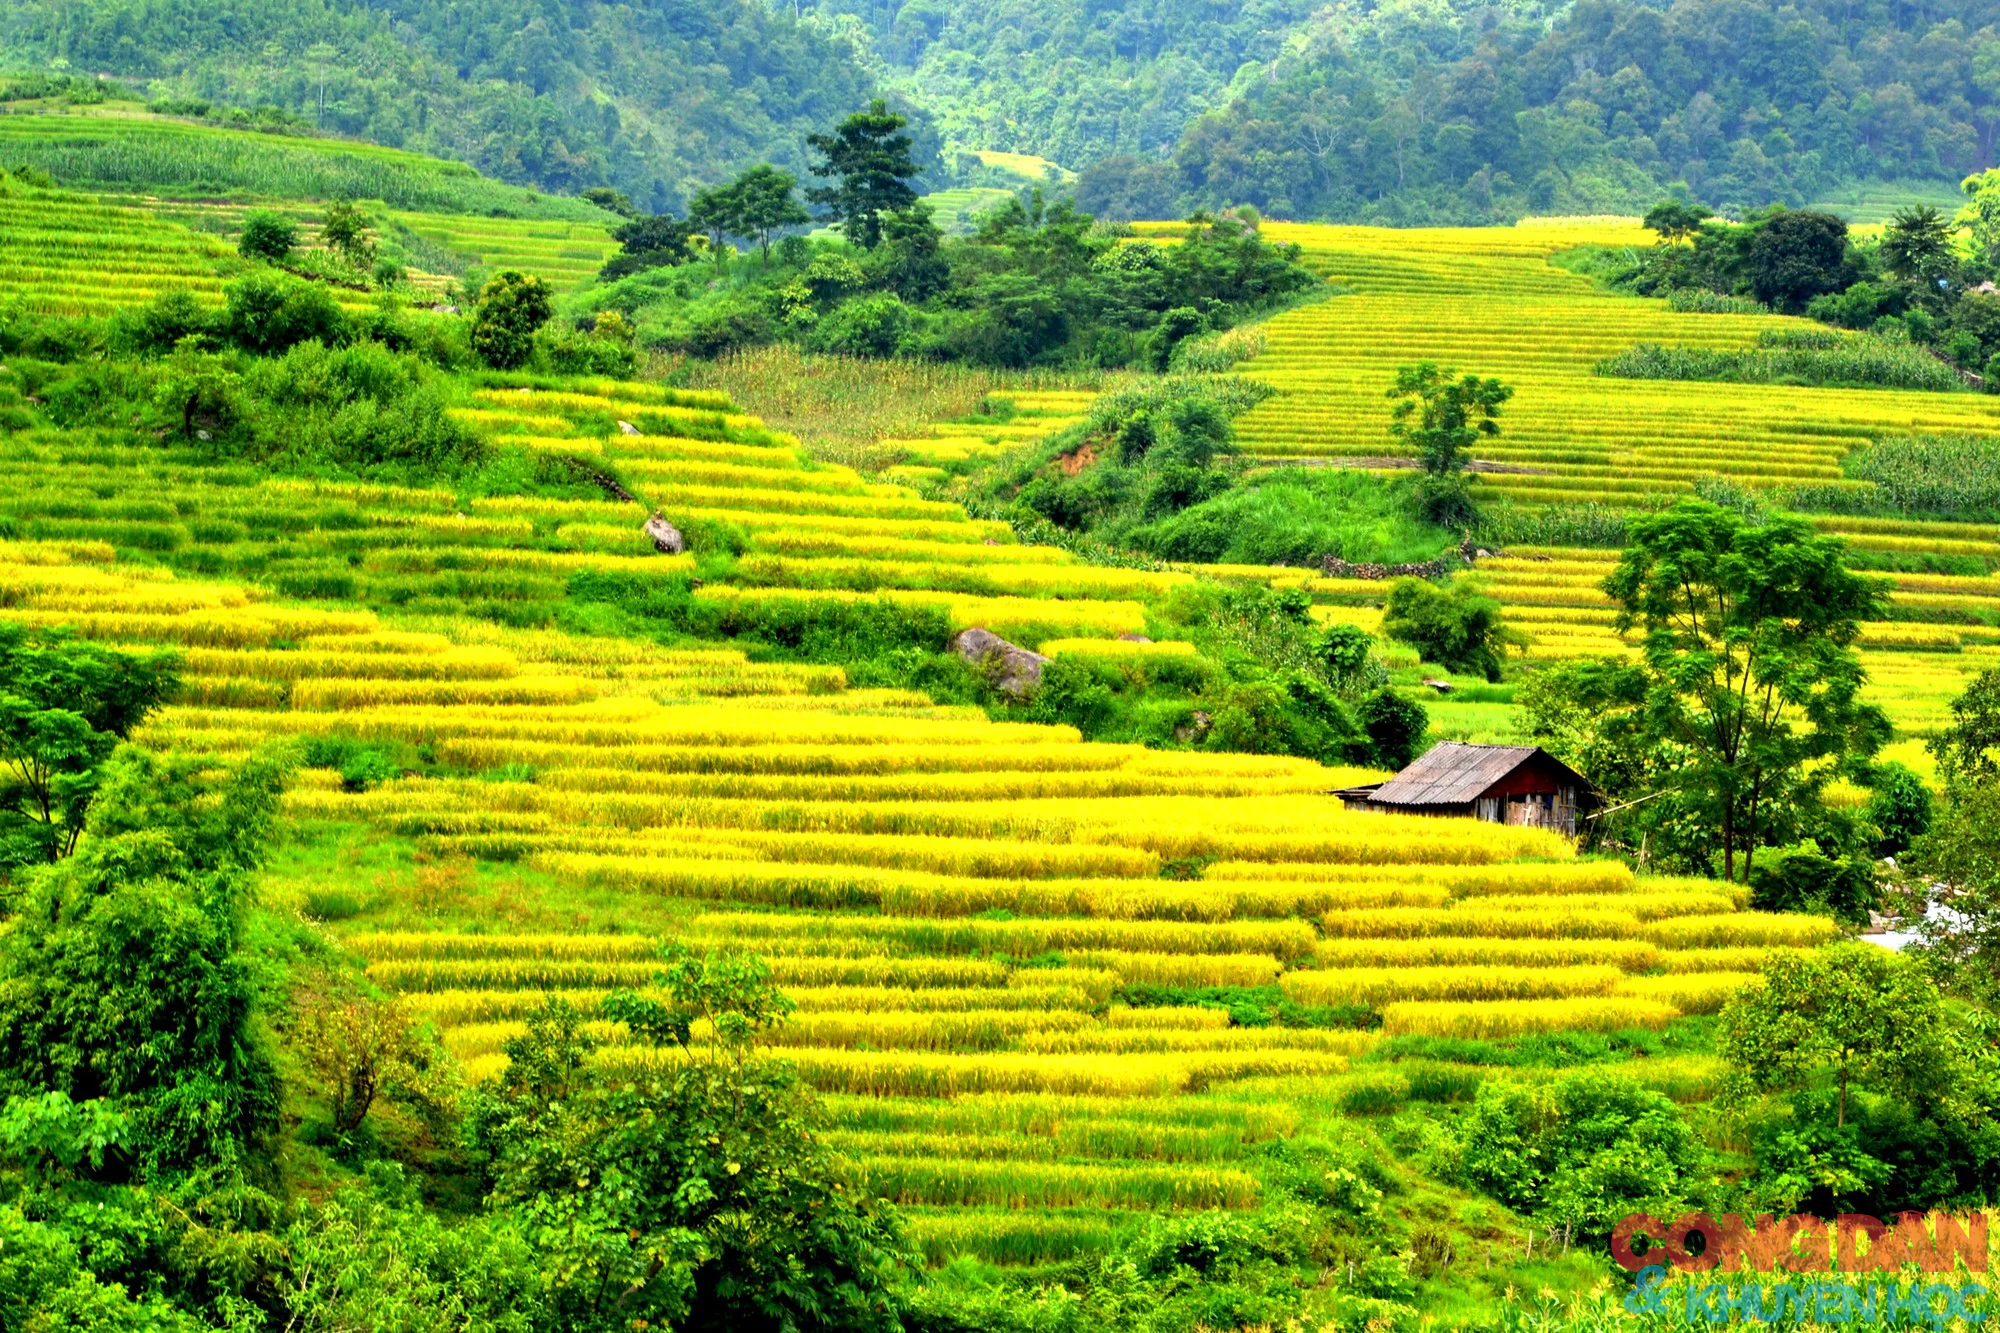 Mùa vàng đẹp mê trên núi cao Bát Xát, Lào Cai - Ảnh 4.